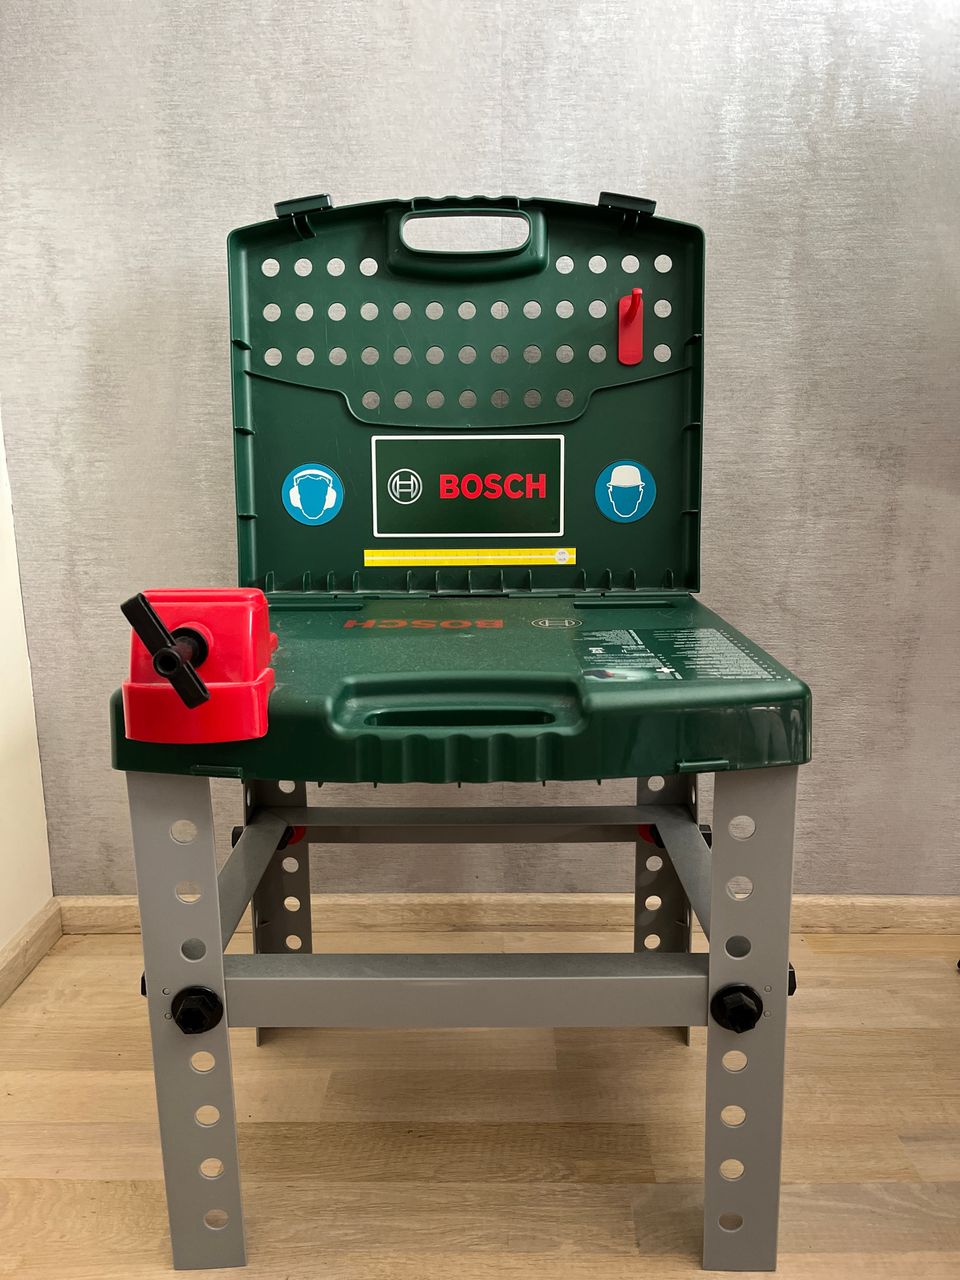 Bosch työkalusetti ja työpöytä